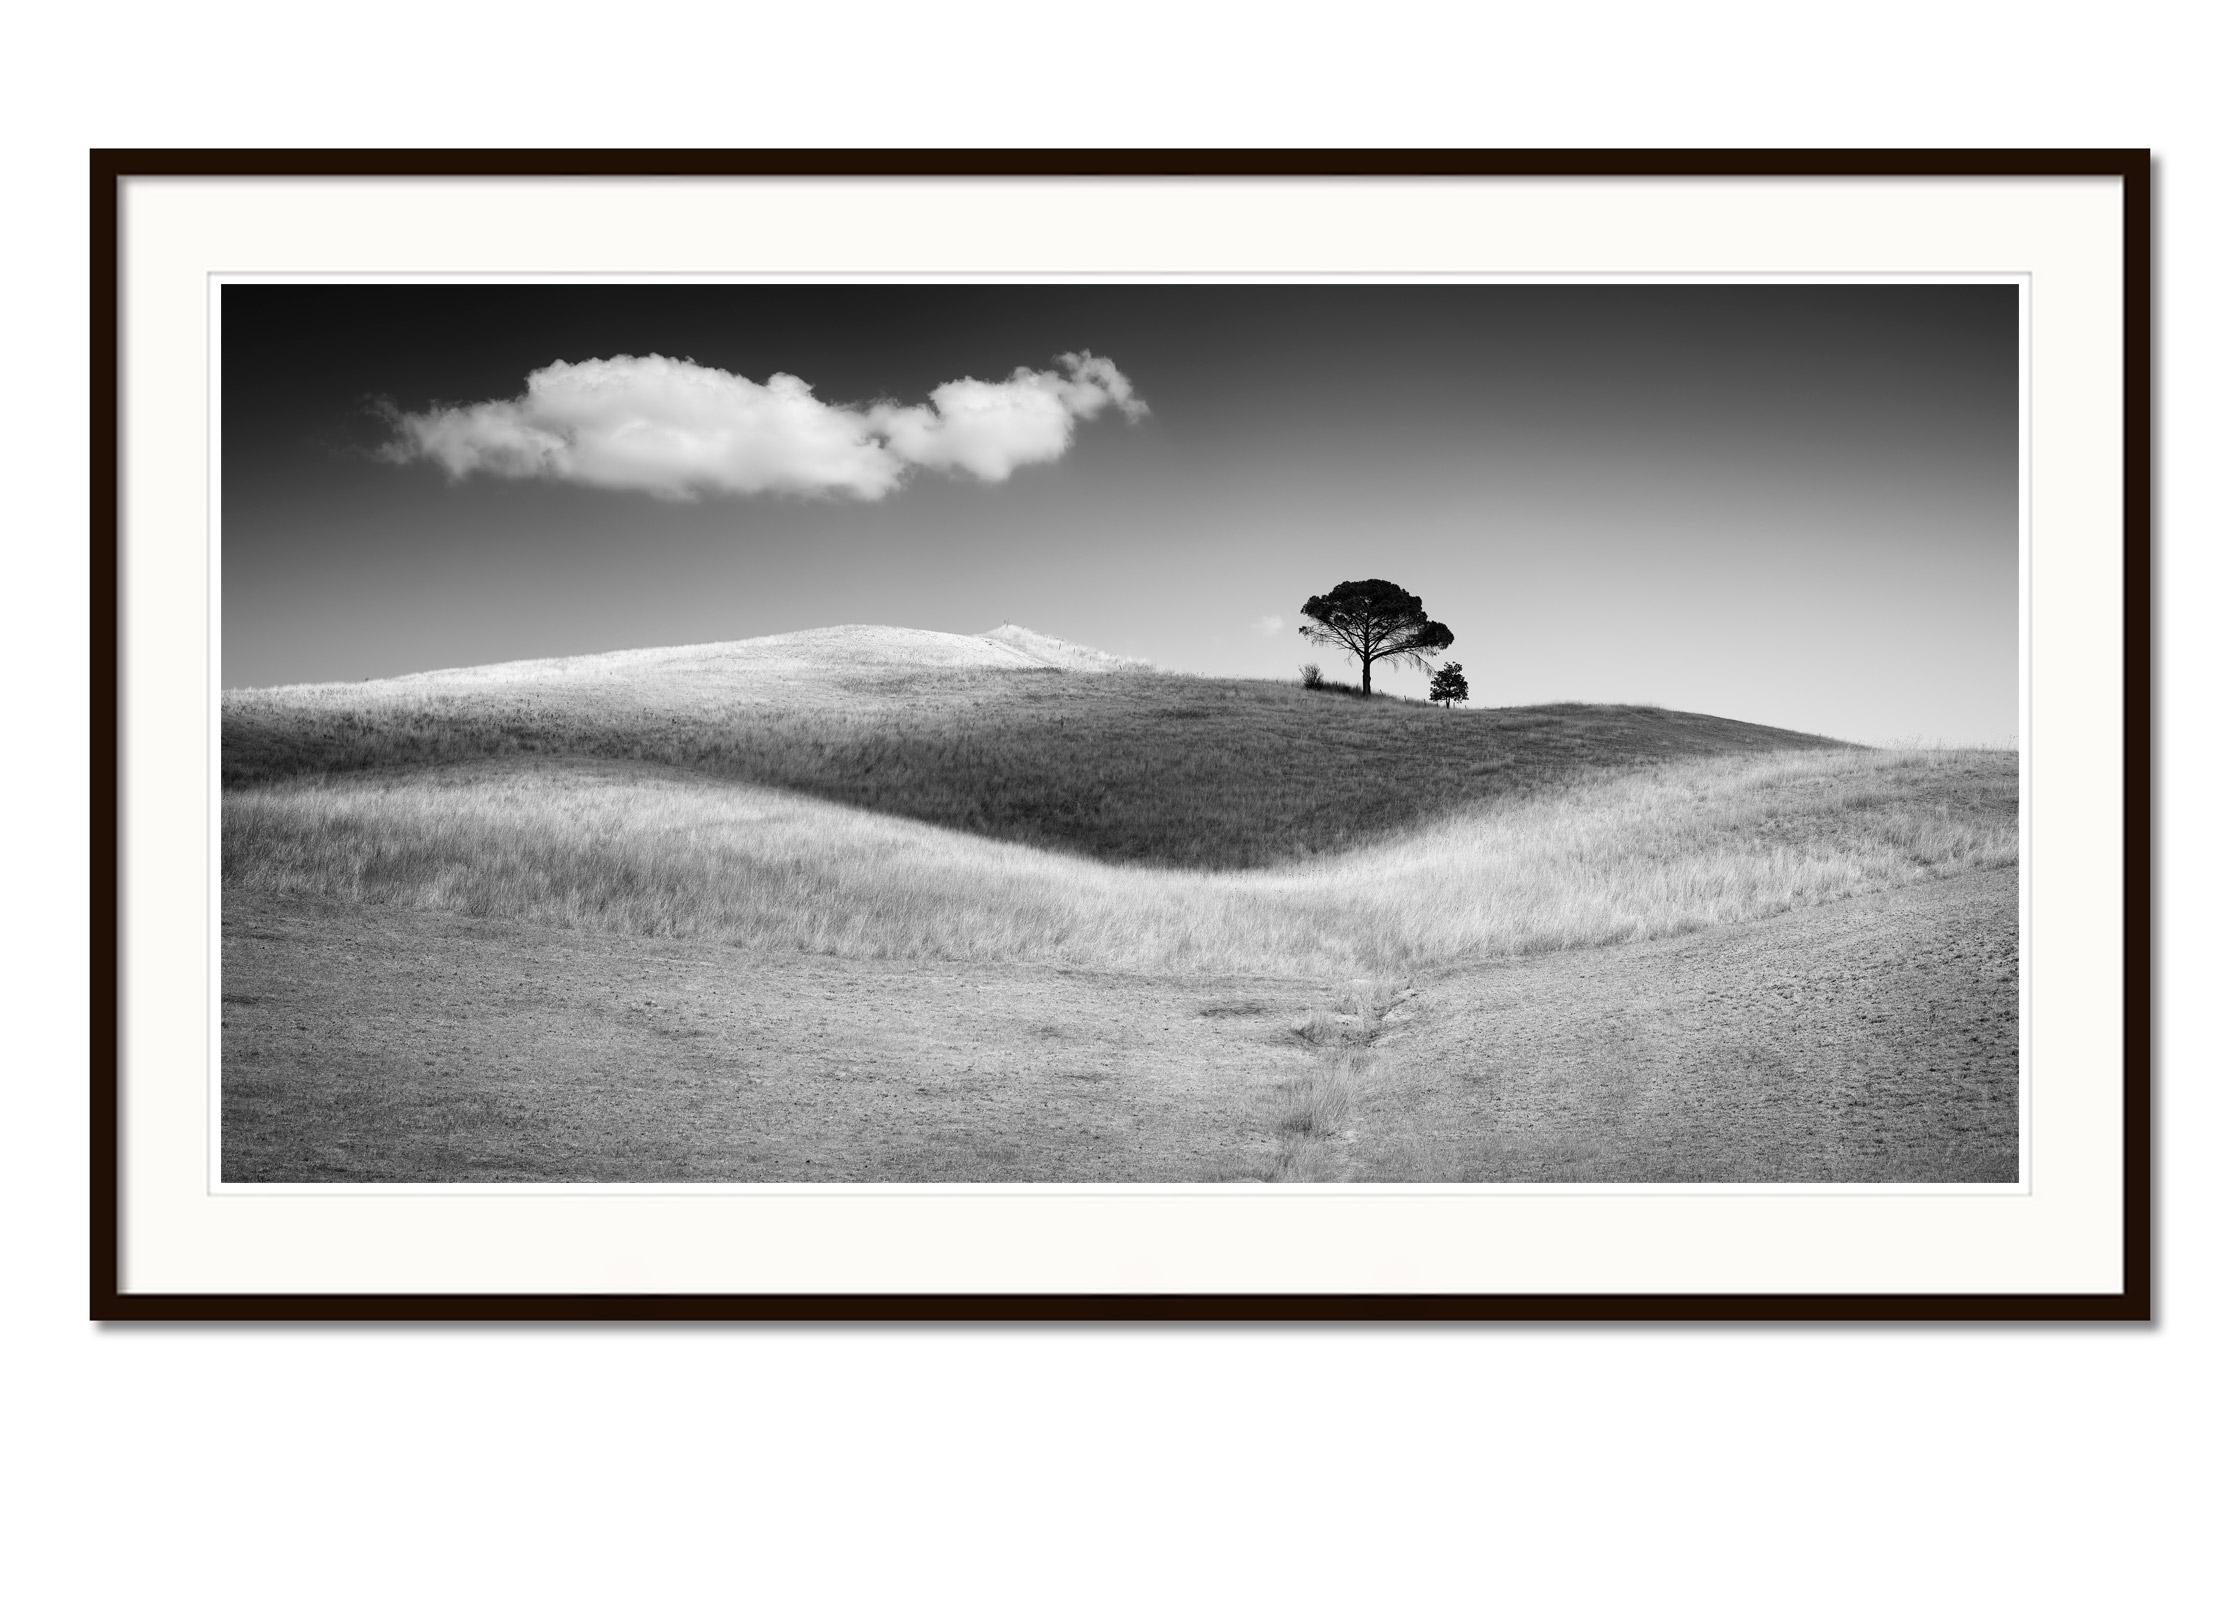 Italienische Stein Kiefernholz, Toskana, Italien, Schwarz-Weiß-Kunstfotografie, Landschaft (Grau), Black and White Photograph, von Gerald Berghammer